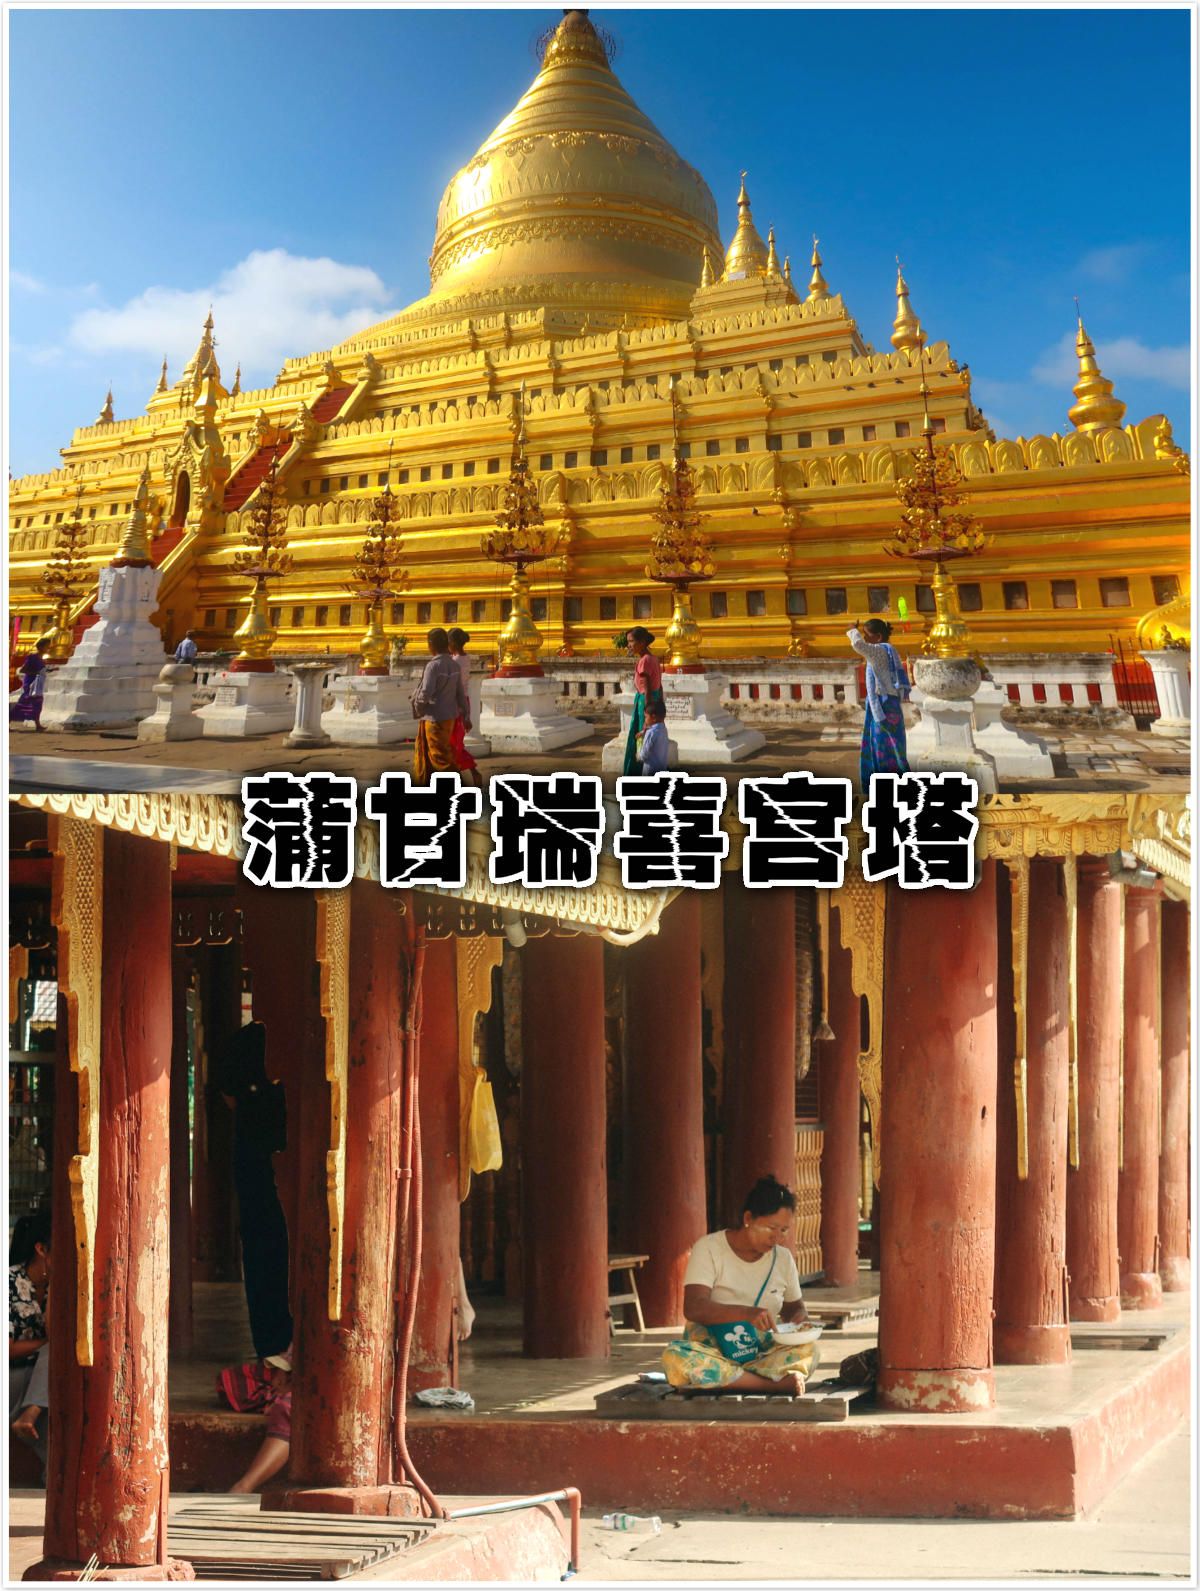 瑞喜宫塔是缅甸建国以来最早的佛塔之一，整个佛塔的建筑十分具有缅甸当地的特色，佛塔周边有八角形平台连接